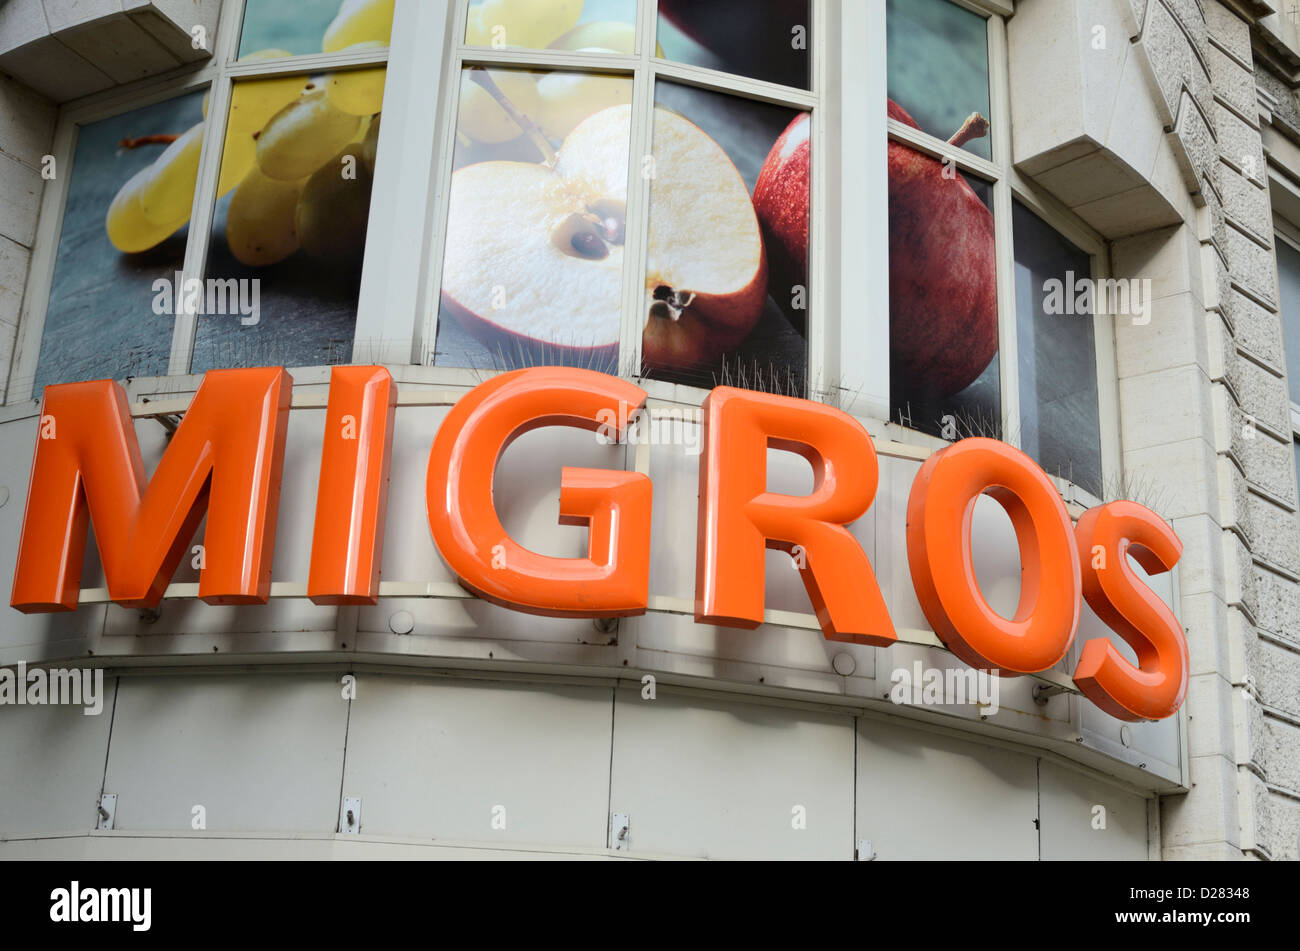 Migros supermarket sign, Basel, Switzerland Stock Photo